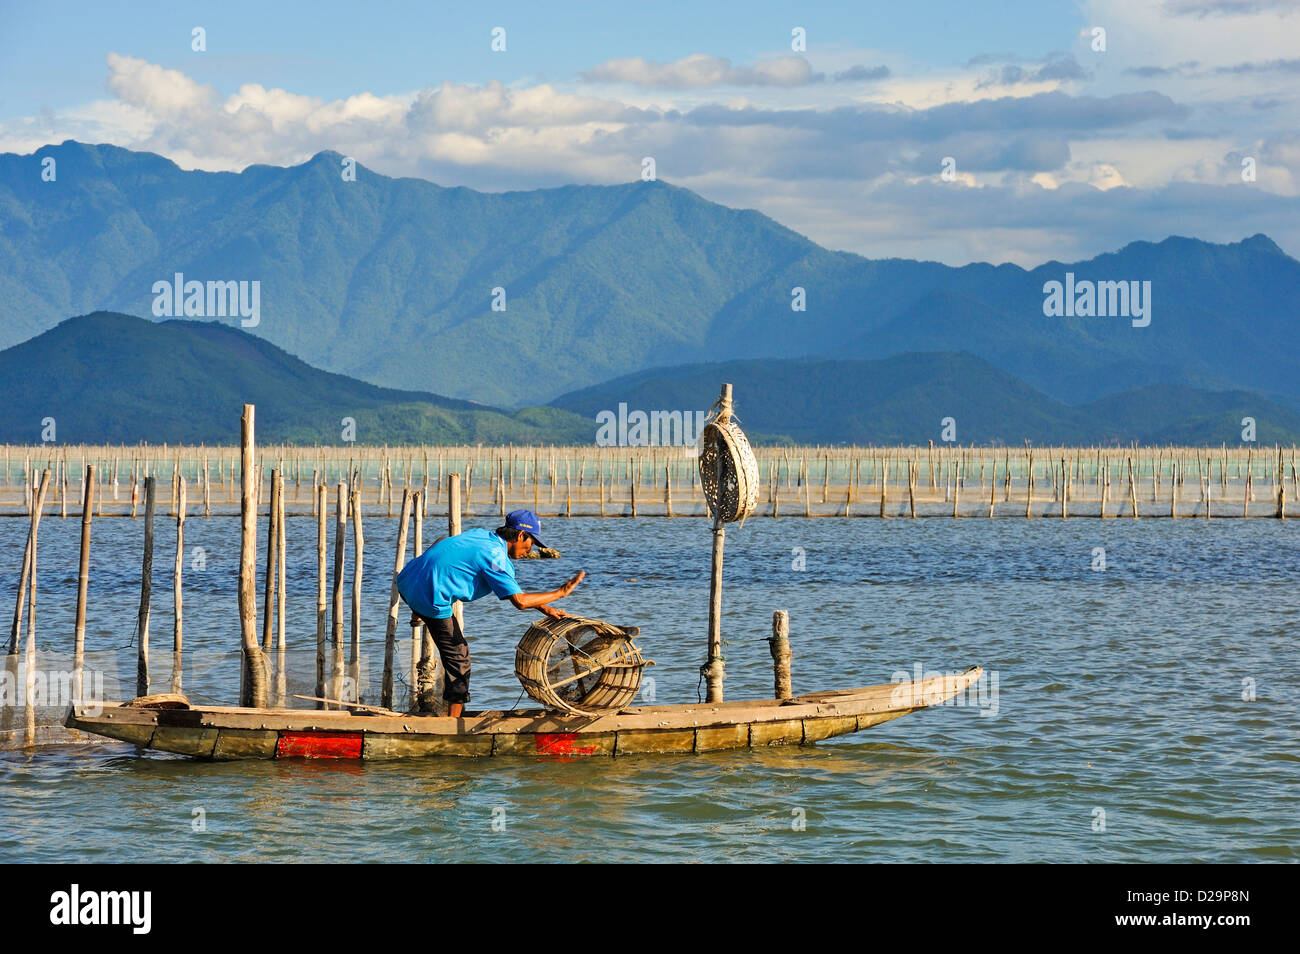 L'unità PHU Loc laguna, Vietnam - Fisherman con trappola di pesca Foto Stock